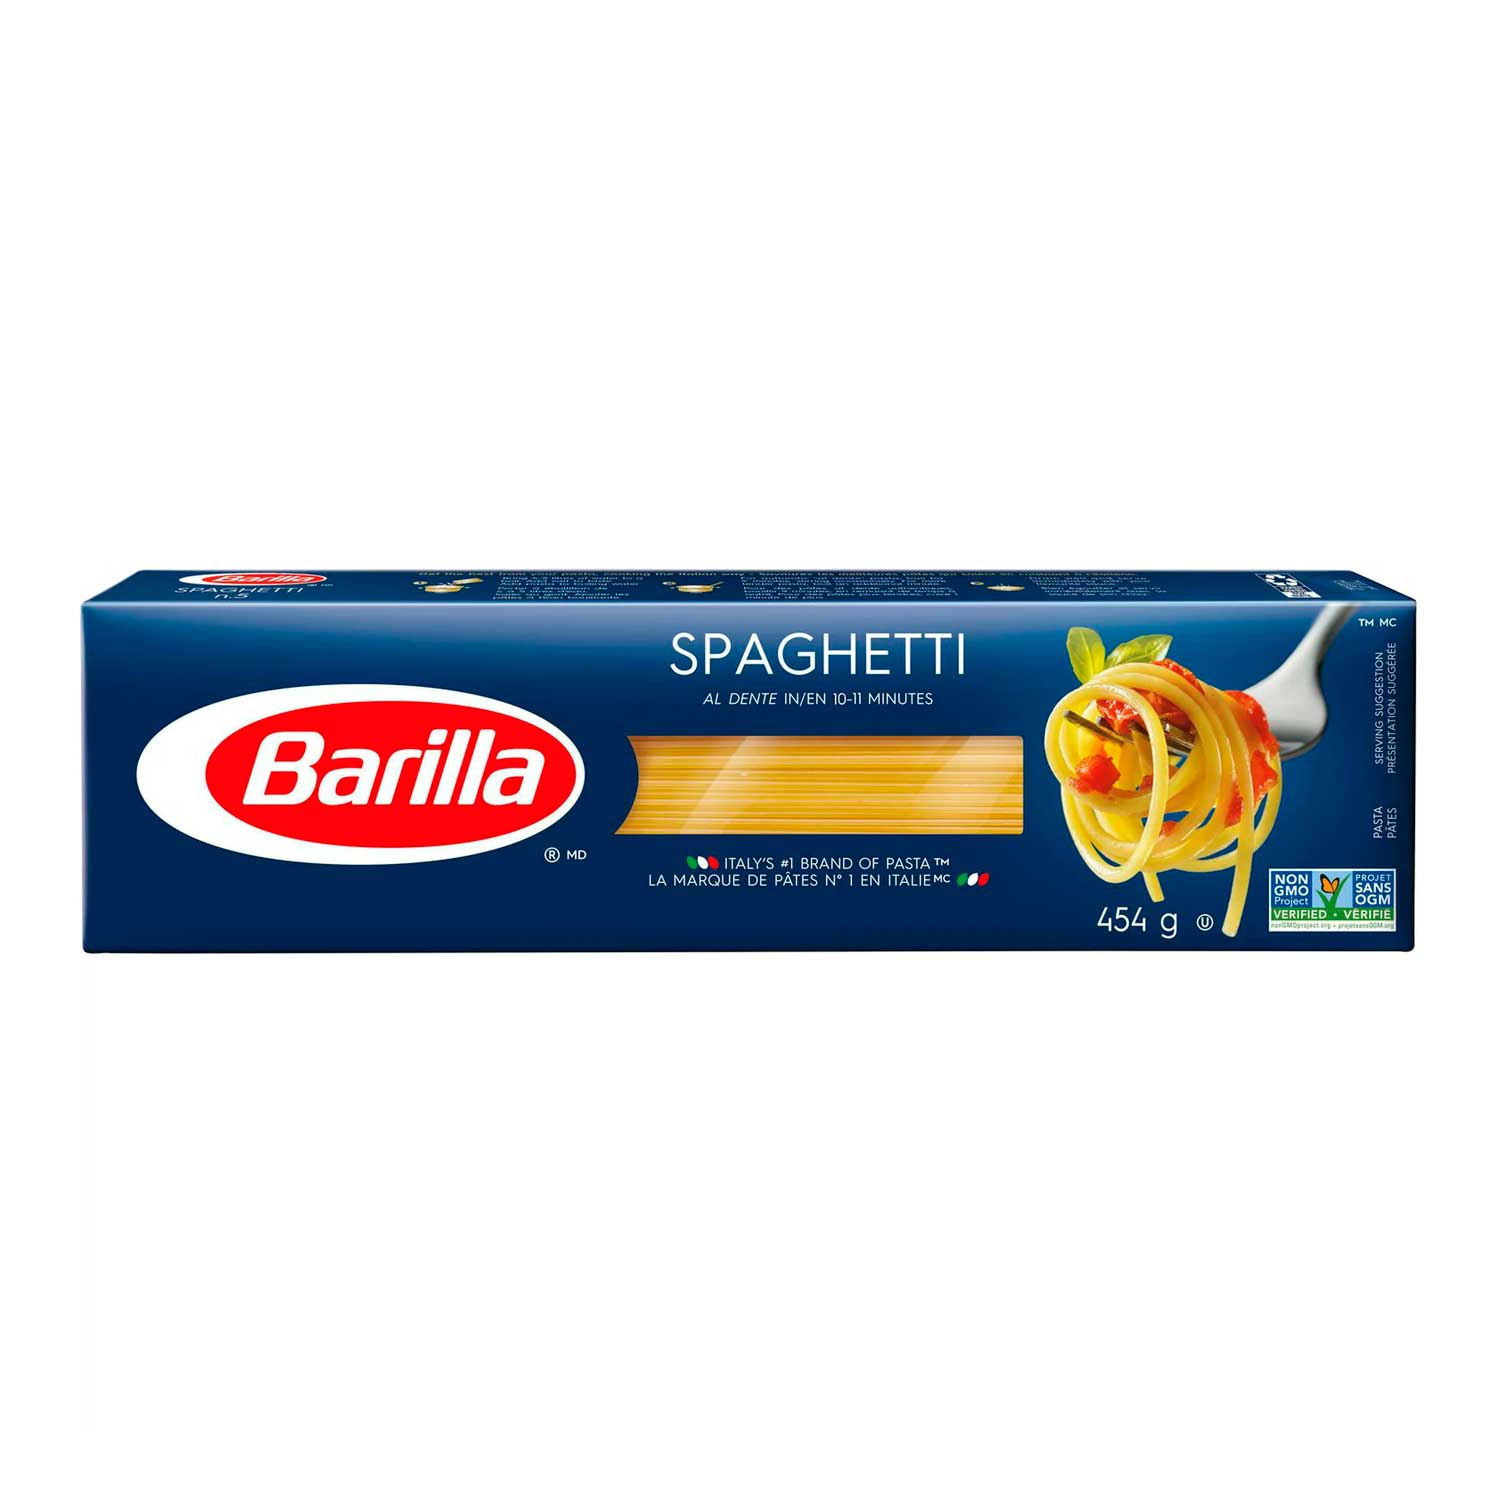 Spaghetti No. 5 Barilla. 454 g